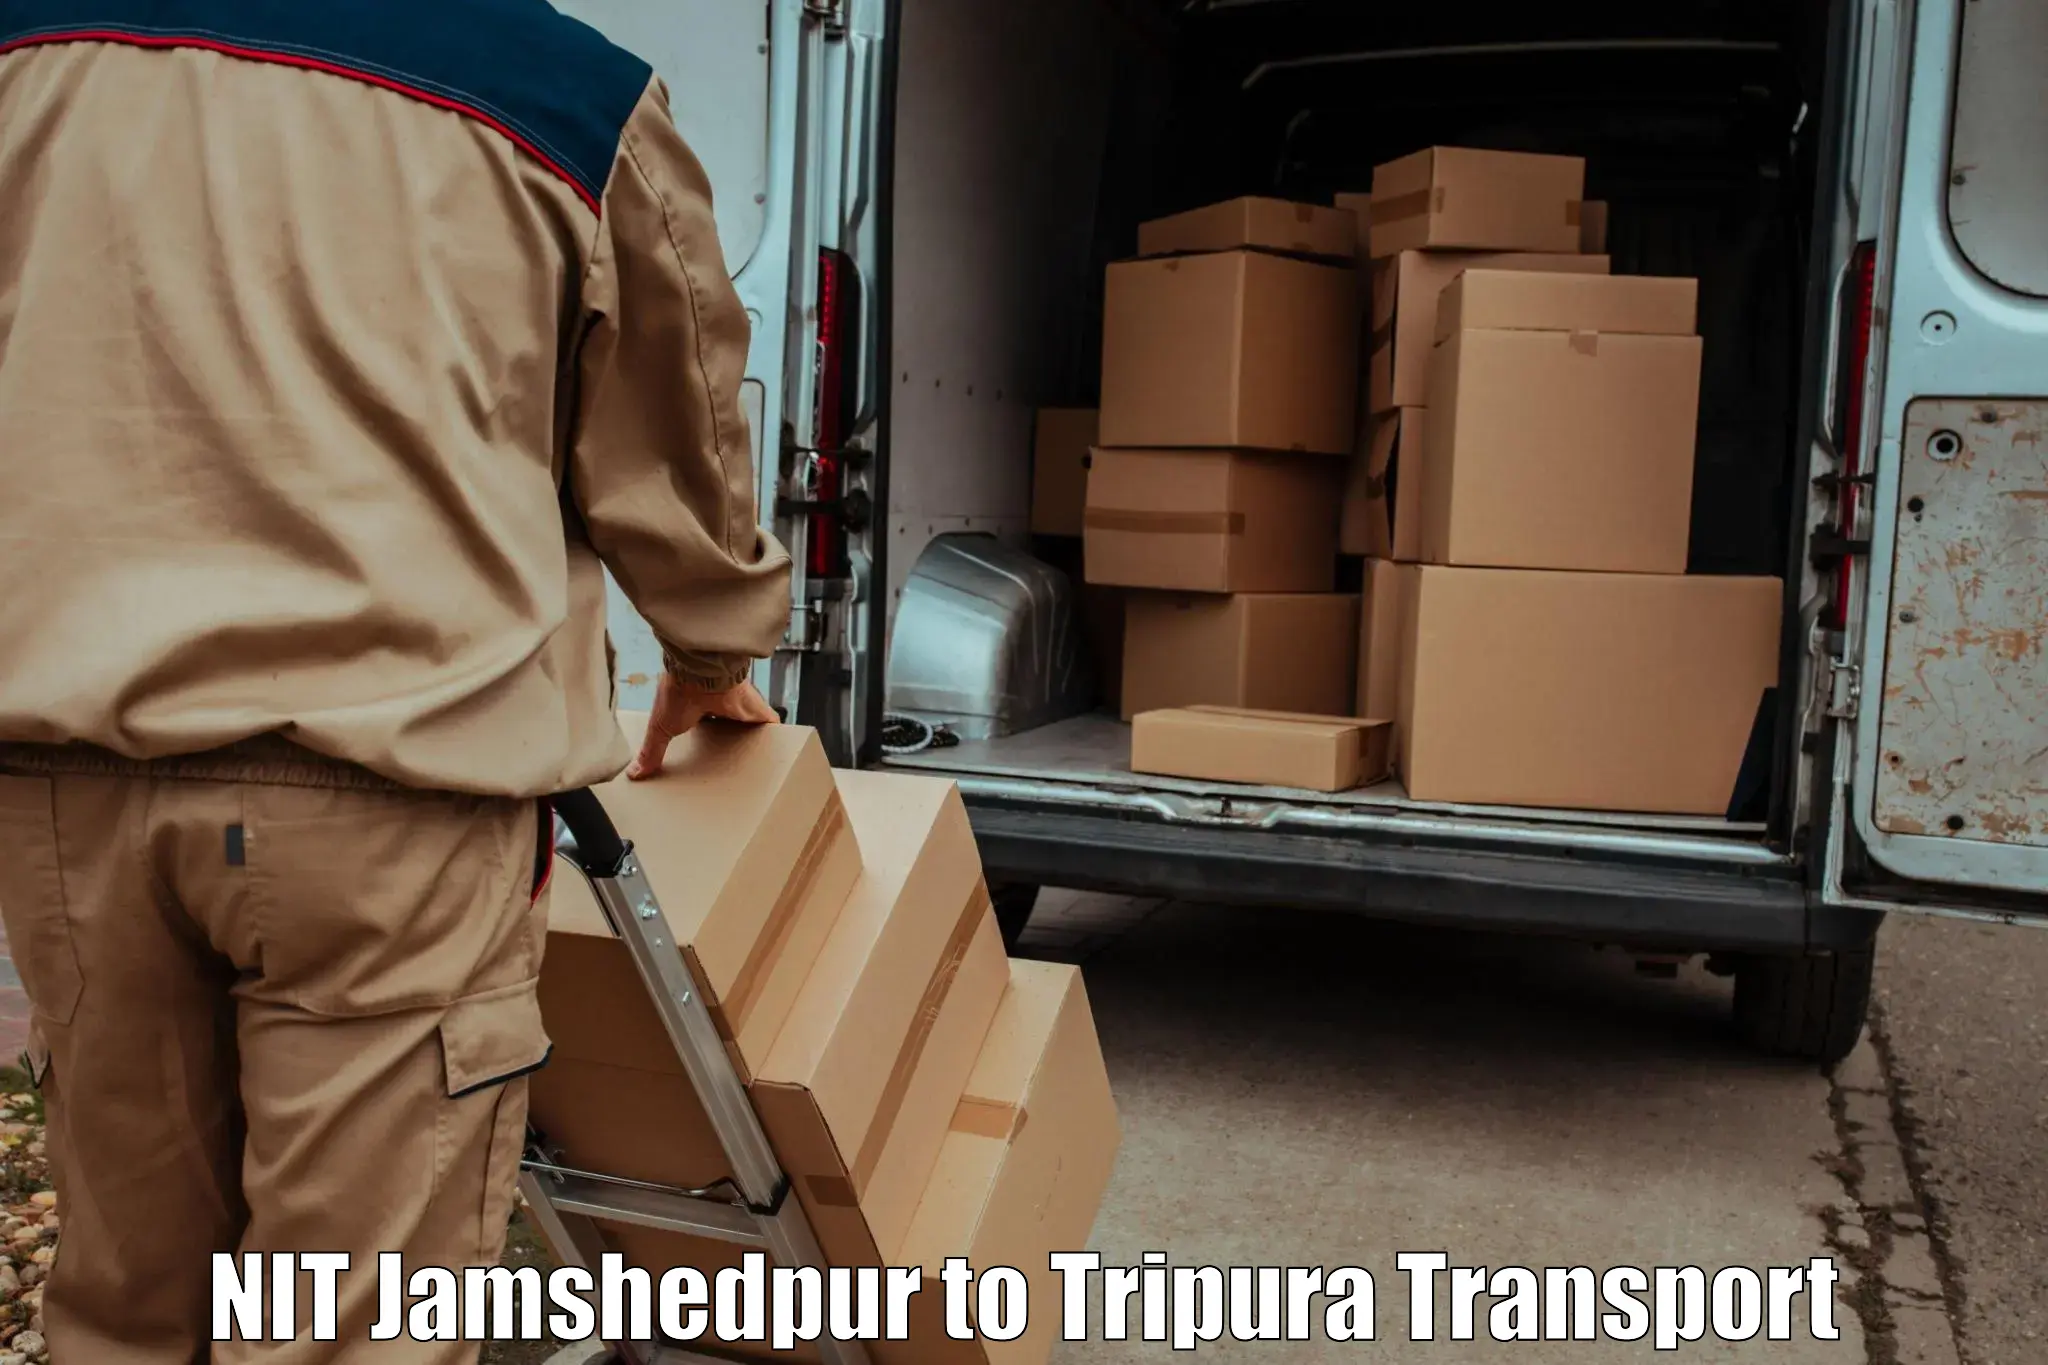 Commercial transport service NIT Jamshedpur to Dharmanagar